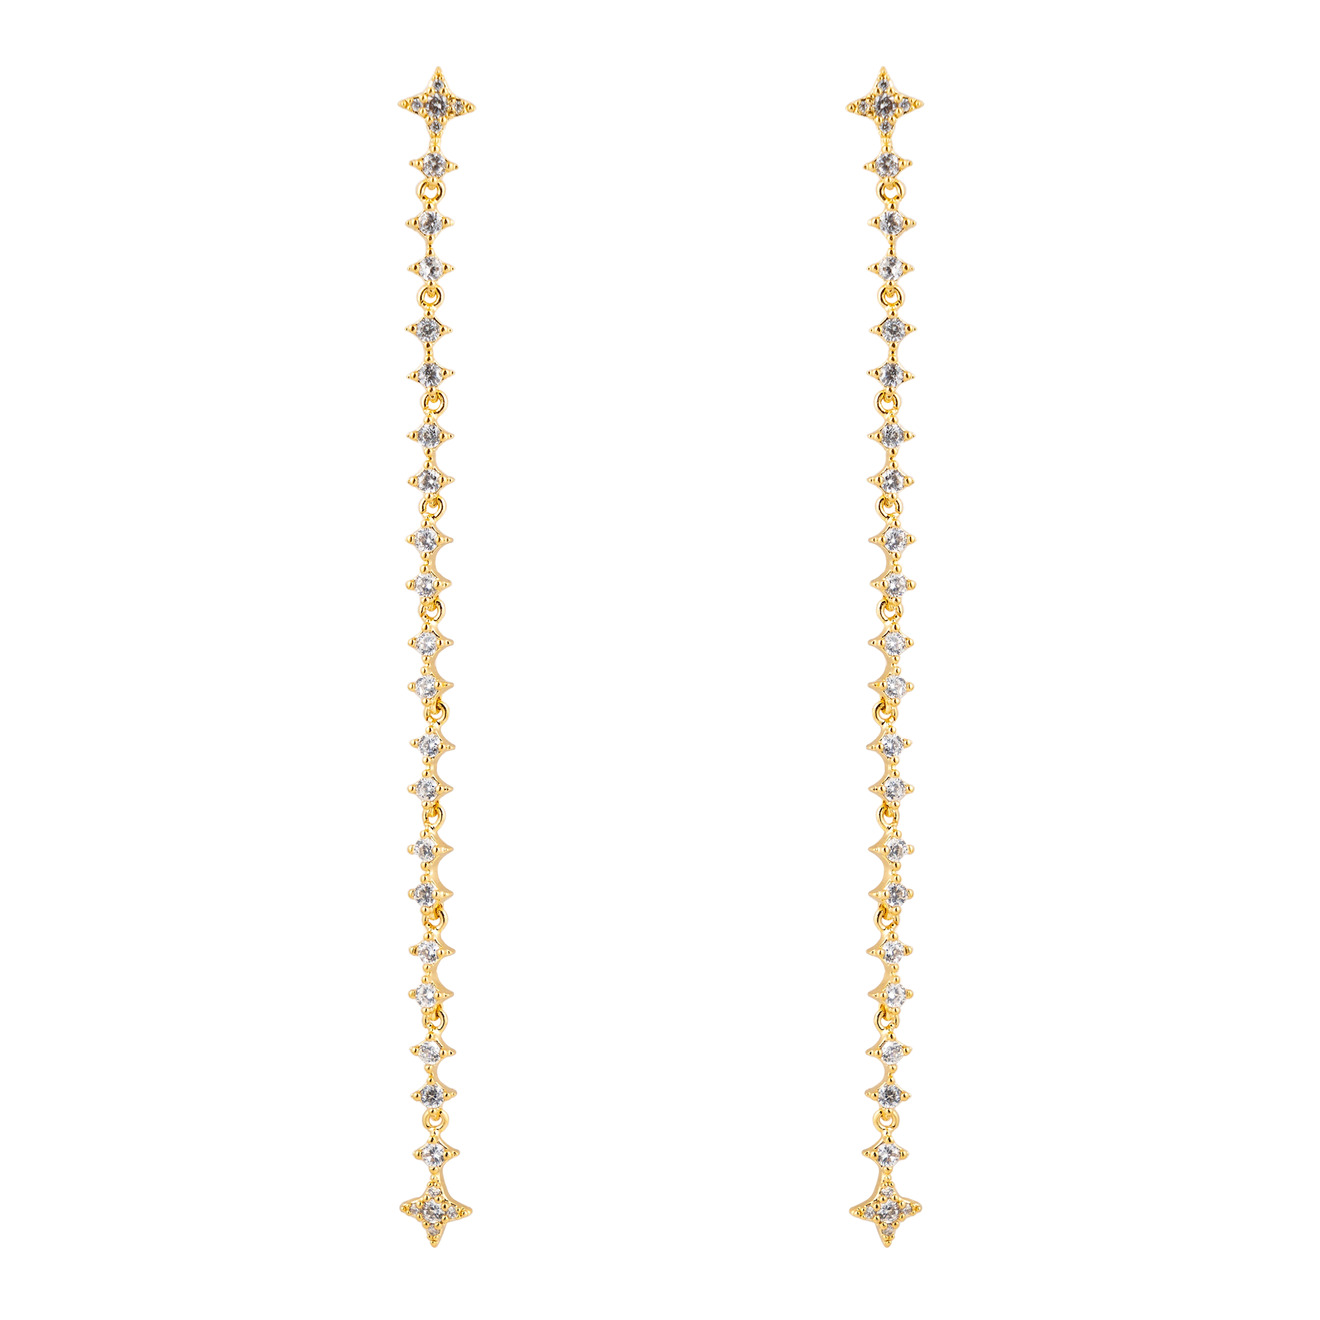 Free Form Jewelry Золотистые длинные серьги с кристаллами-звездами длинные асимметричные серьги с натуральным гематитом и кристаллами